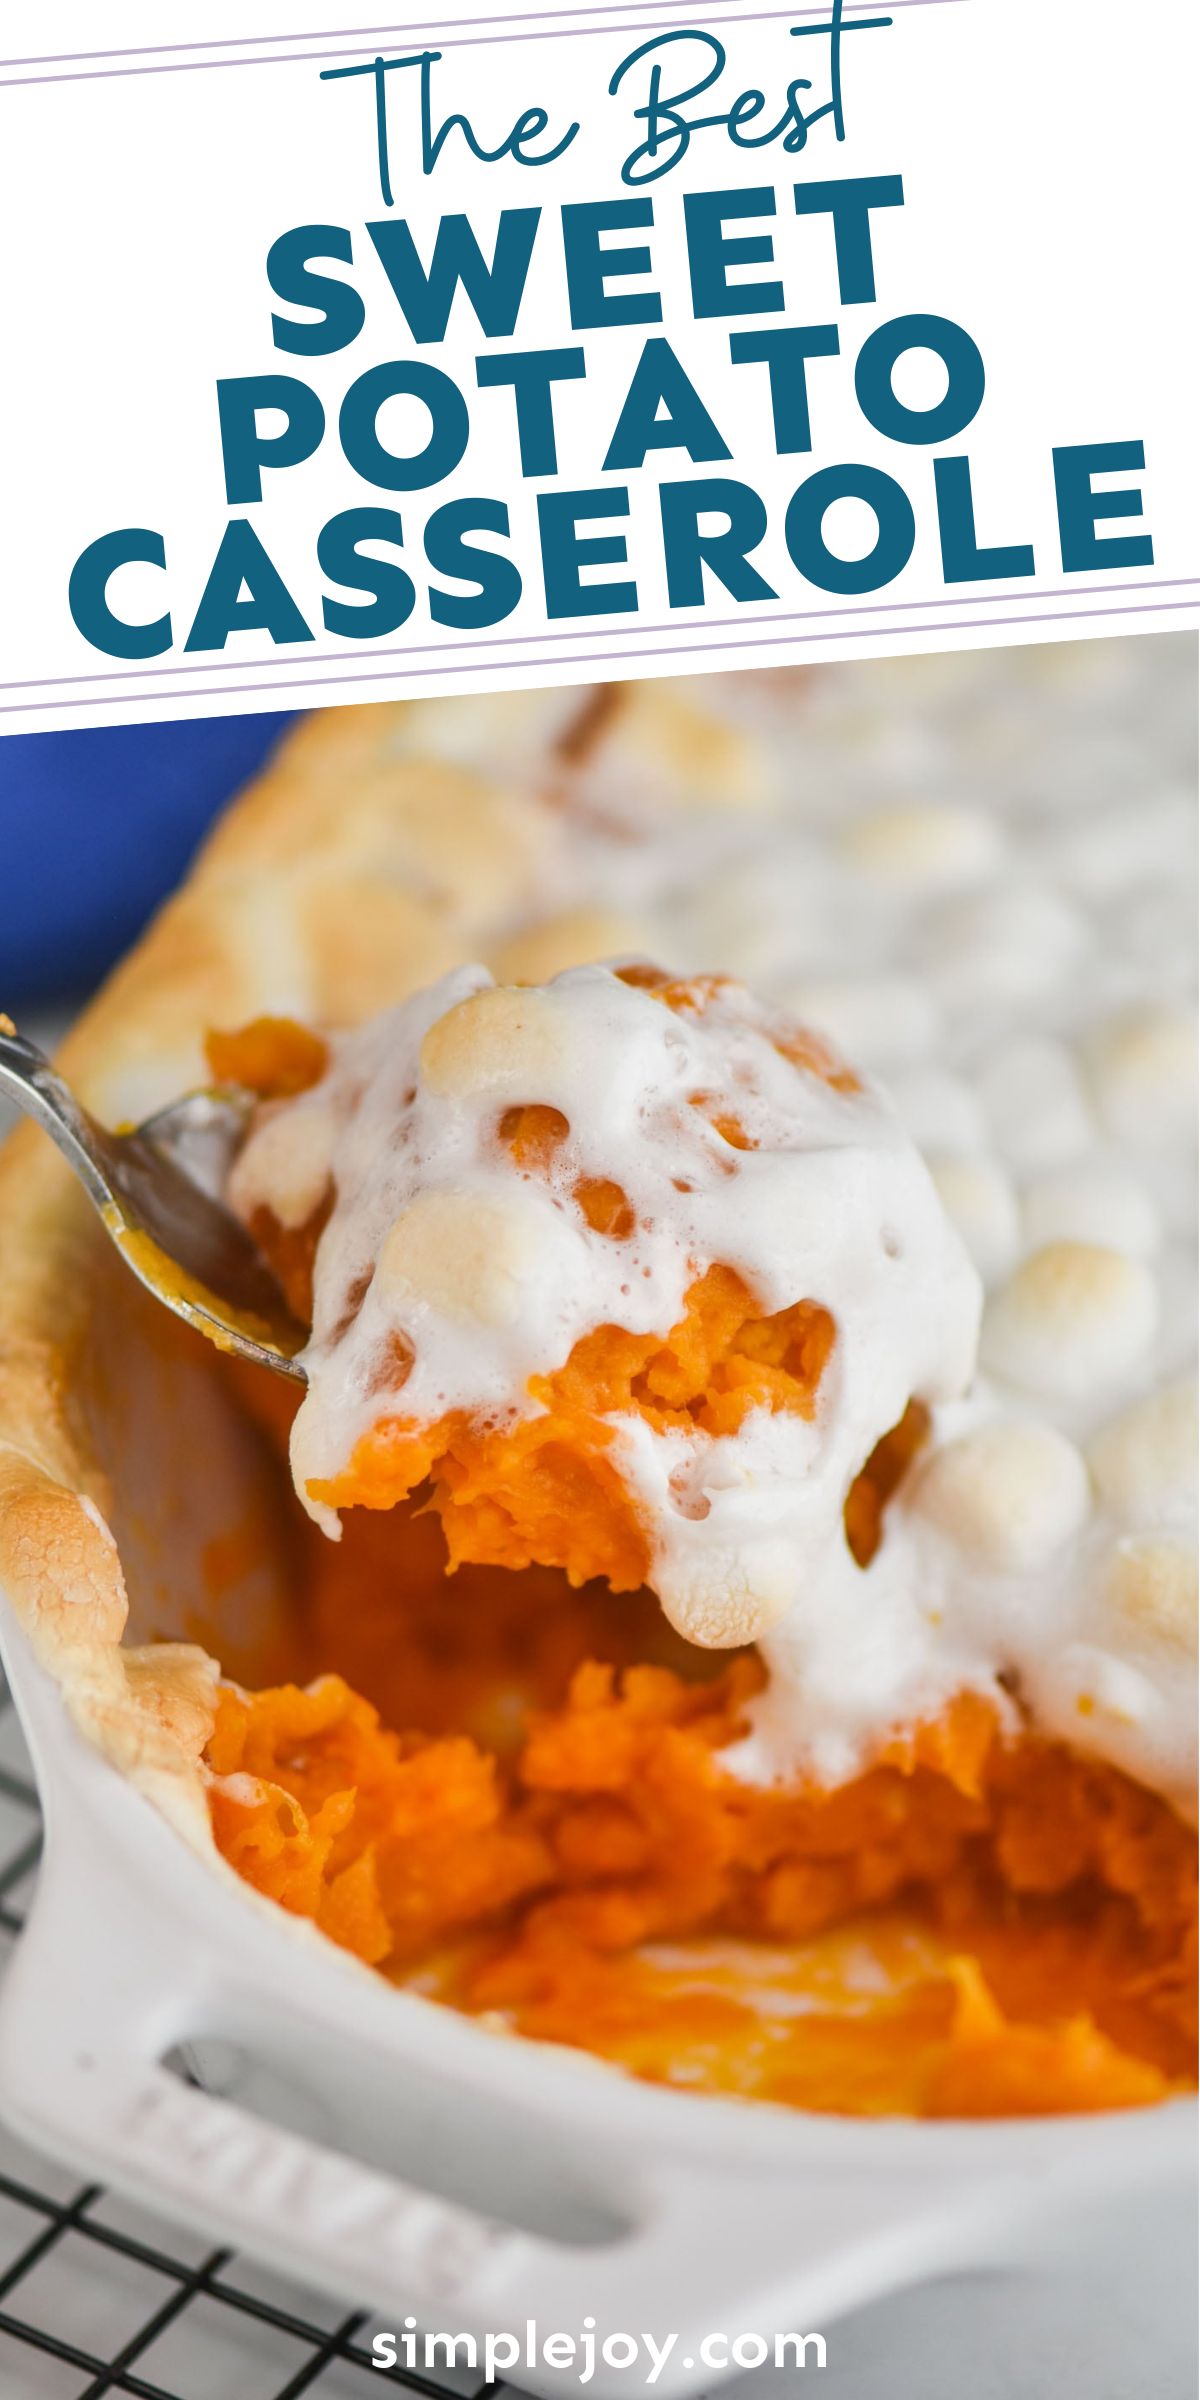 Sweet Potato Casserole Recipe - Simple Joy